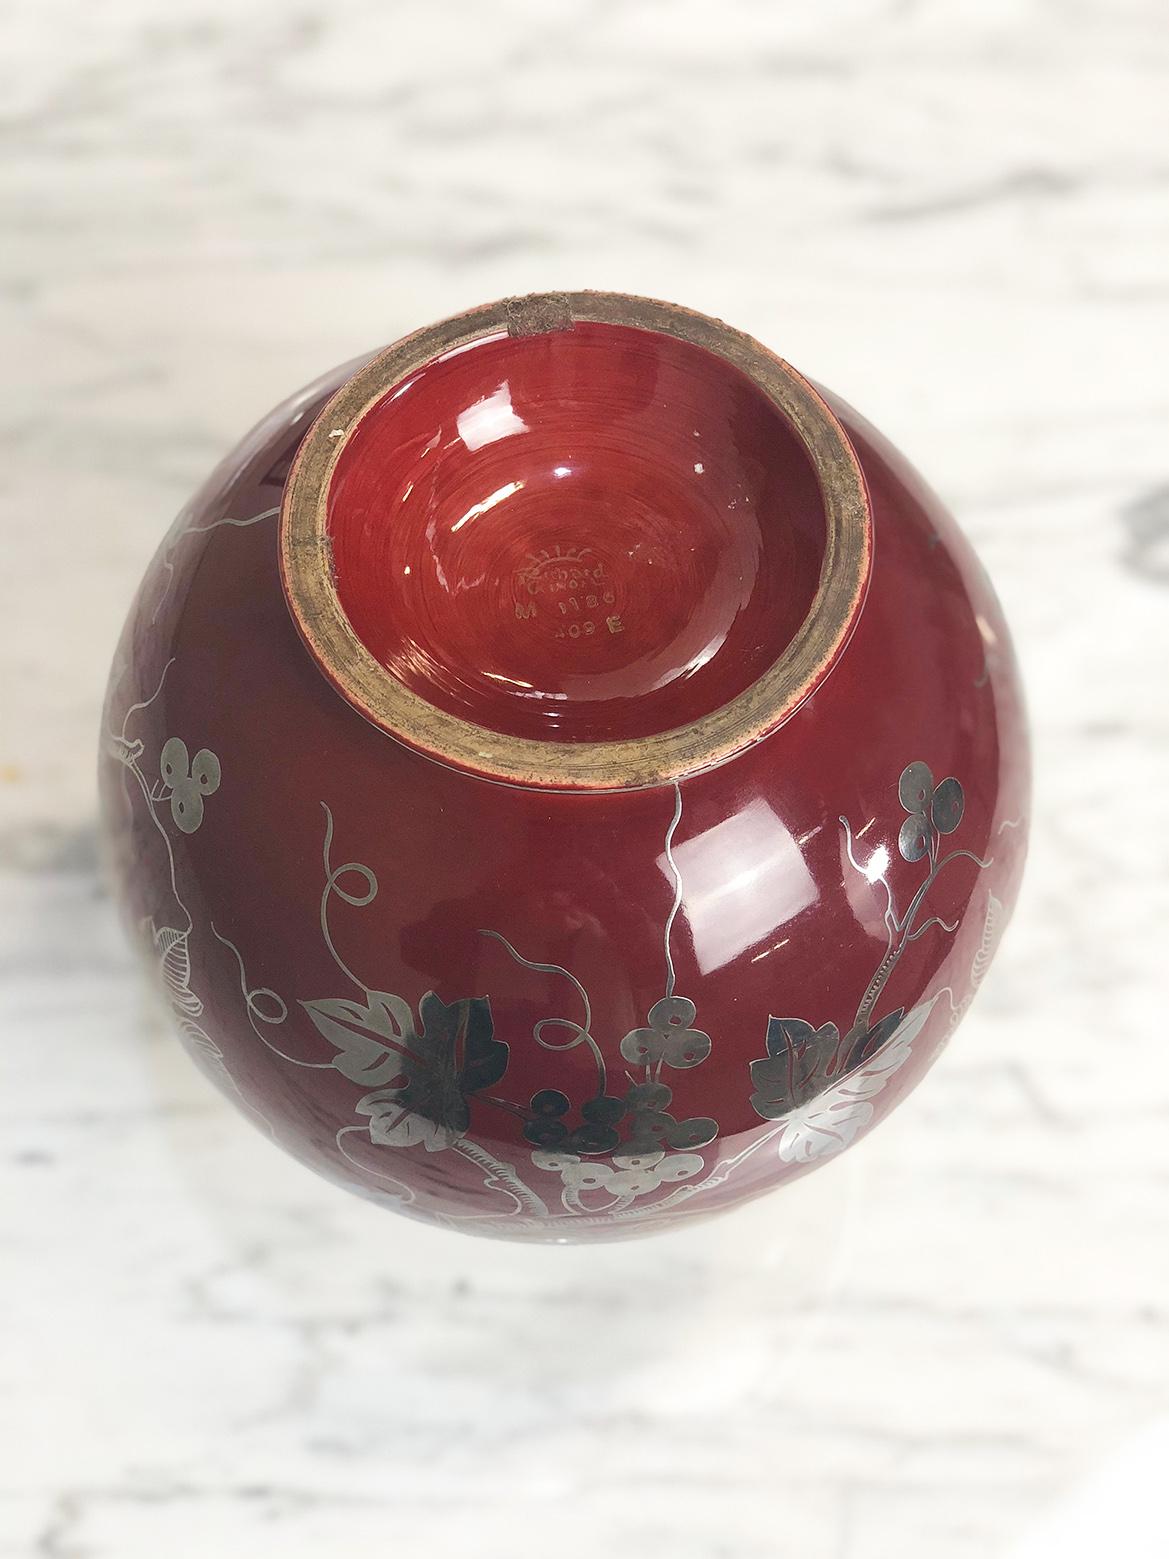 Ceramic Gio Ponti's Globular Vase in Red Majolica for Richard Ginori, 1930s